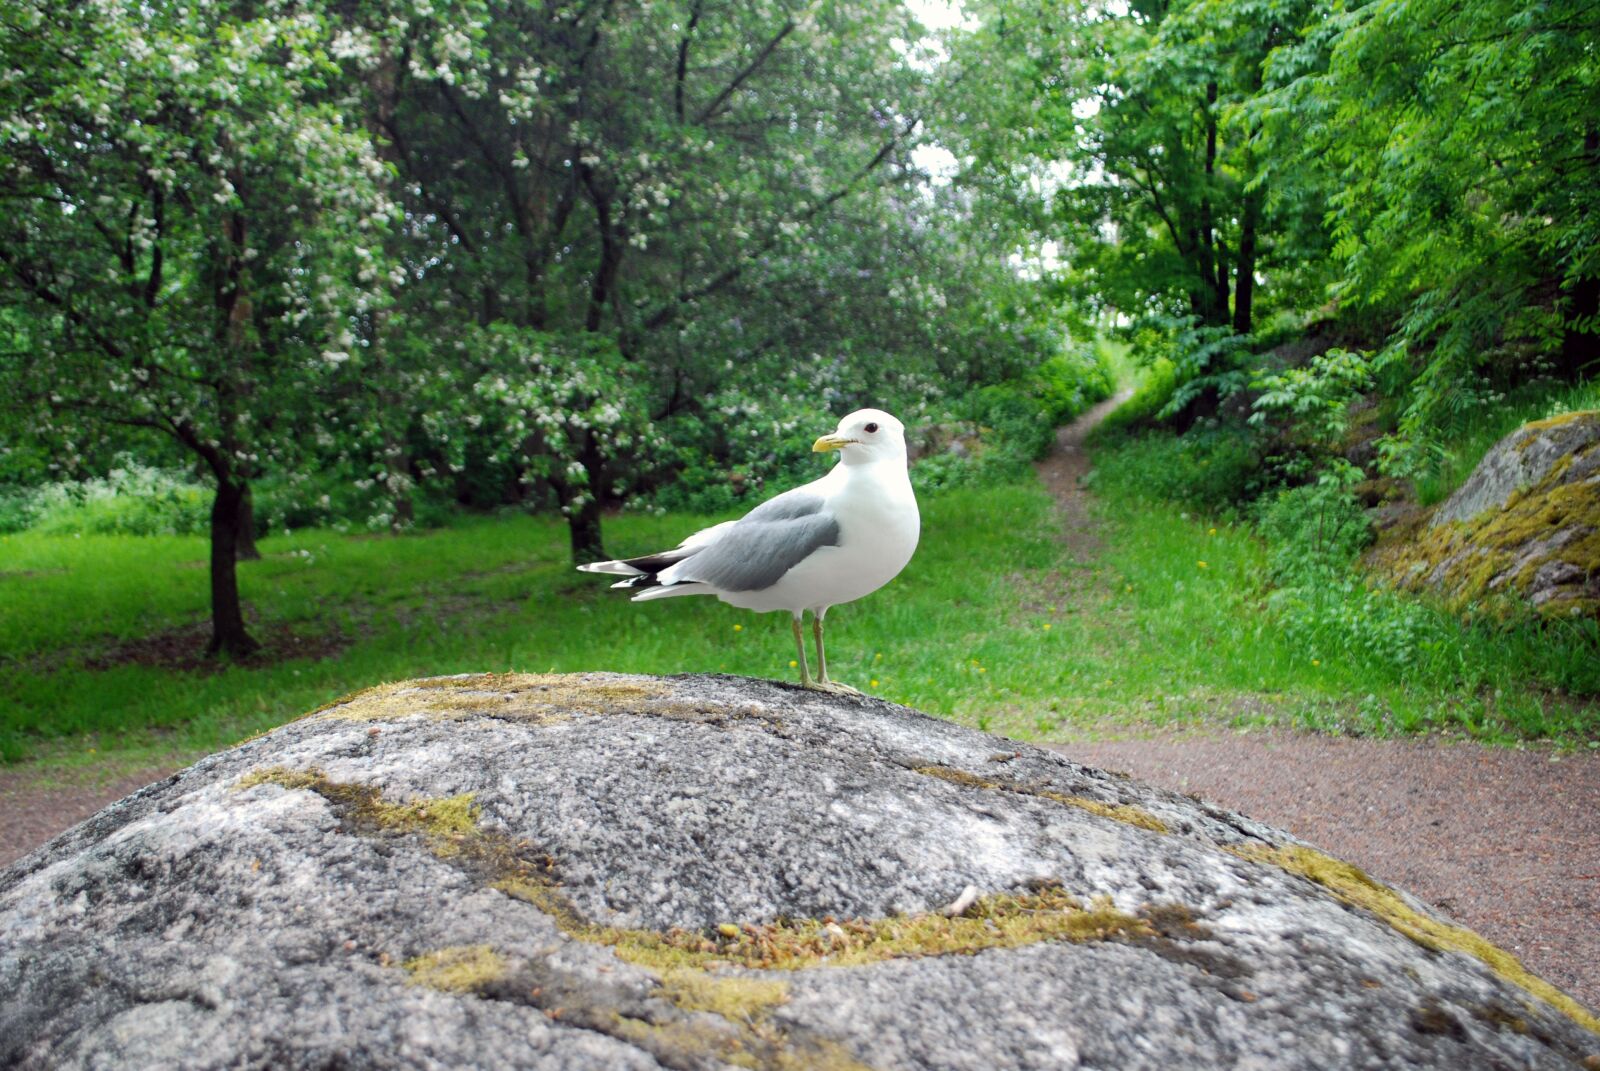 Nikon D60 sample photo. Seagull, bird, nature photography